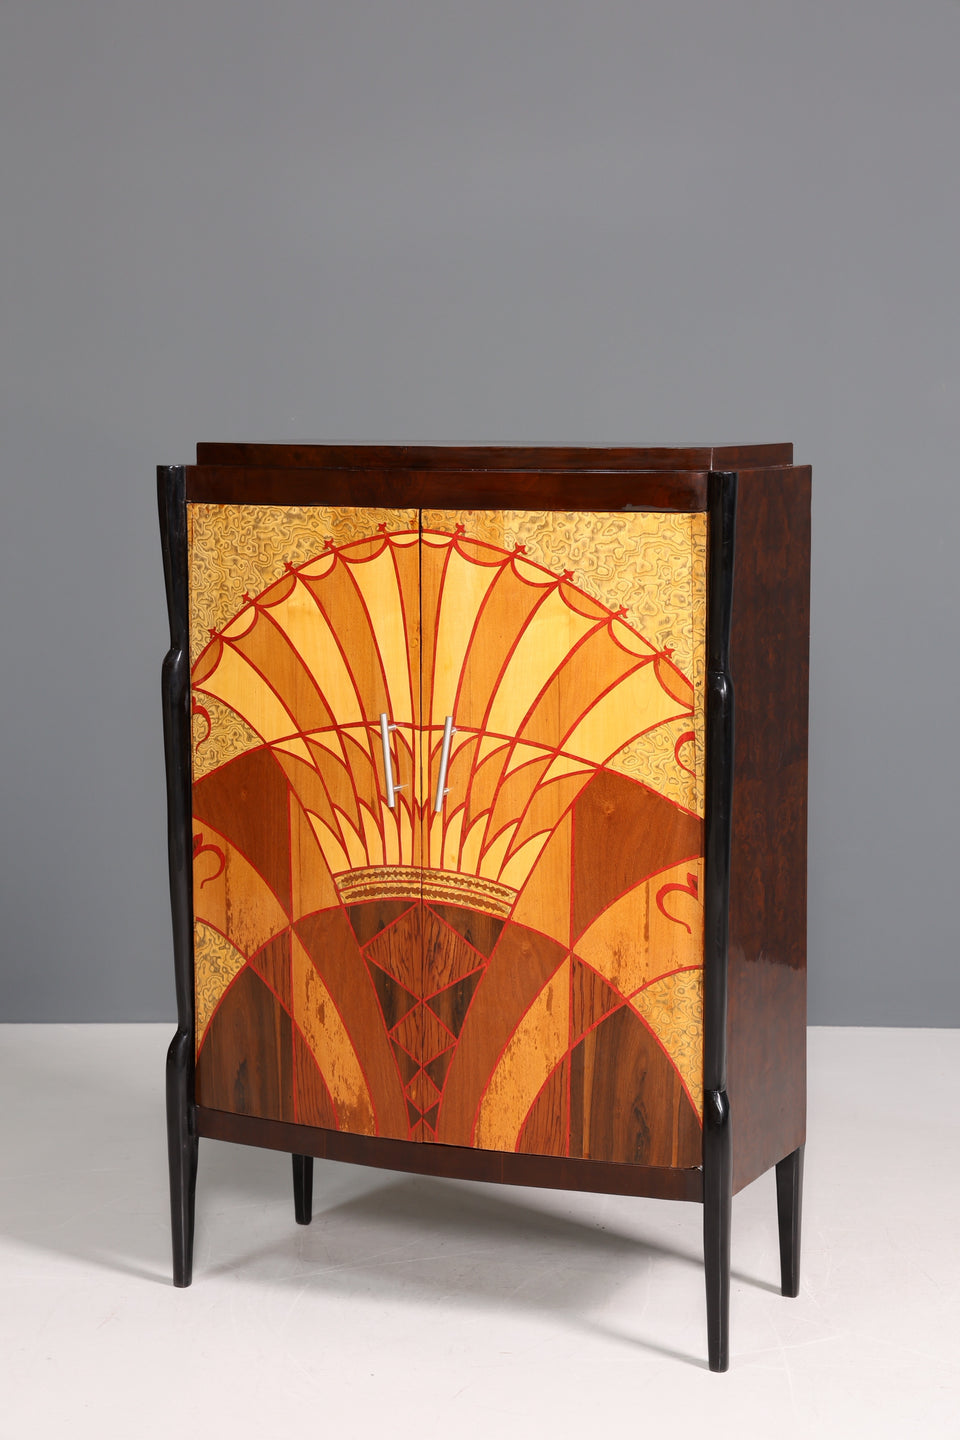 Wunderschönes Art Deco Stil Highboard Schrank Kommode Vertiko Sun Cabinet